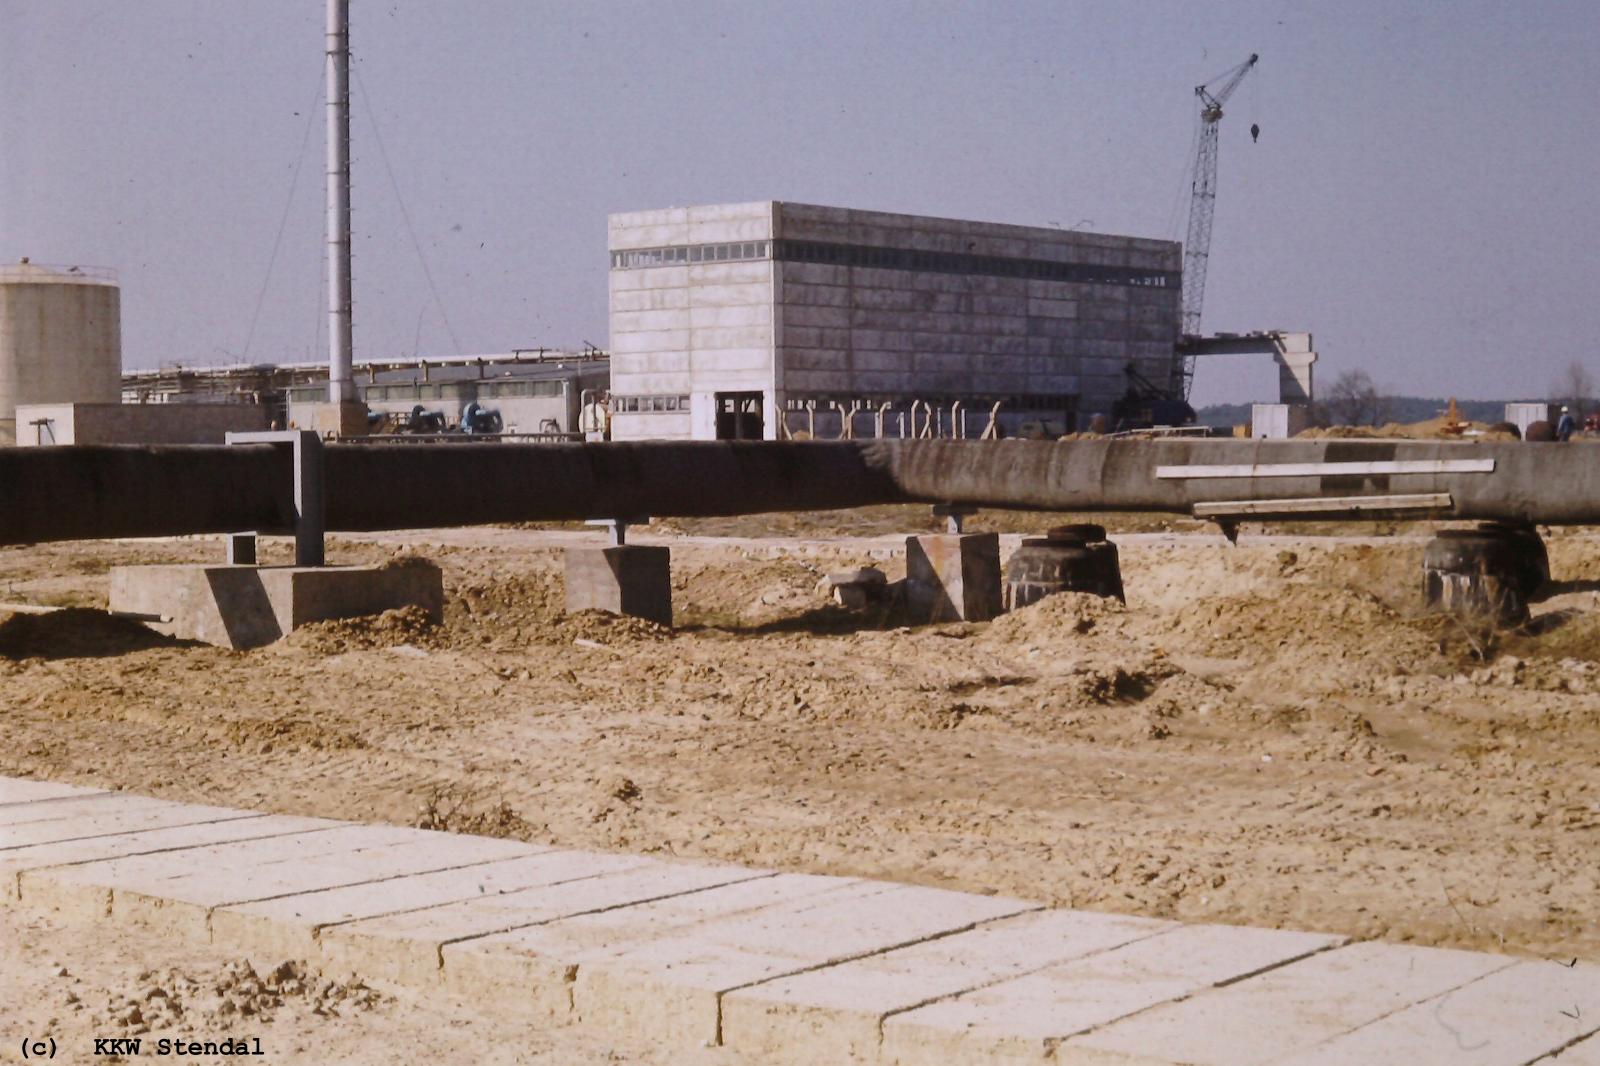  Baustellenfoto 1979, bild79-10.jpg 